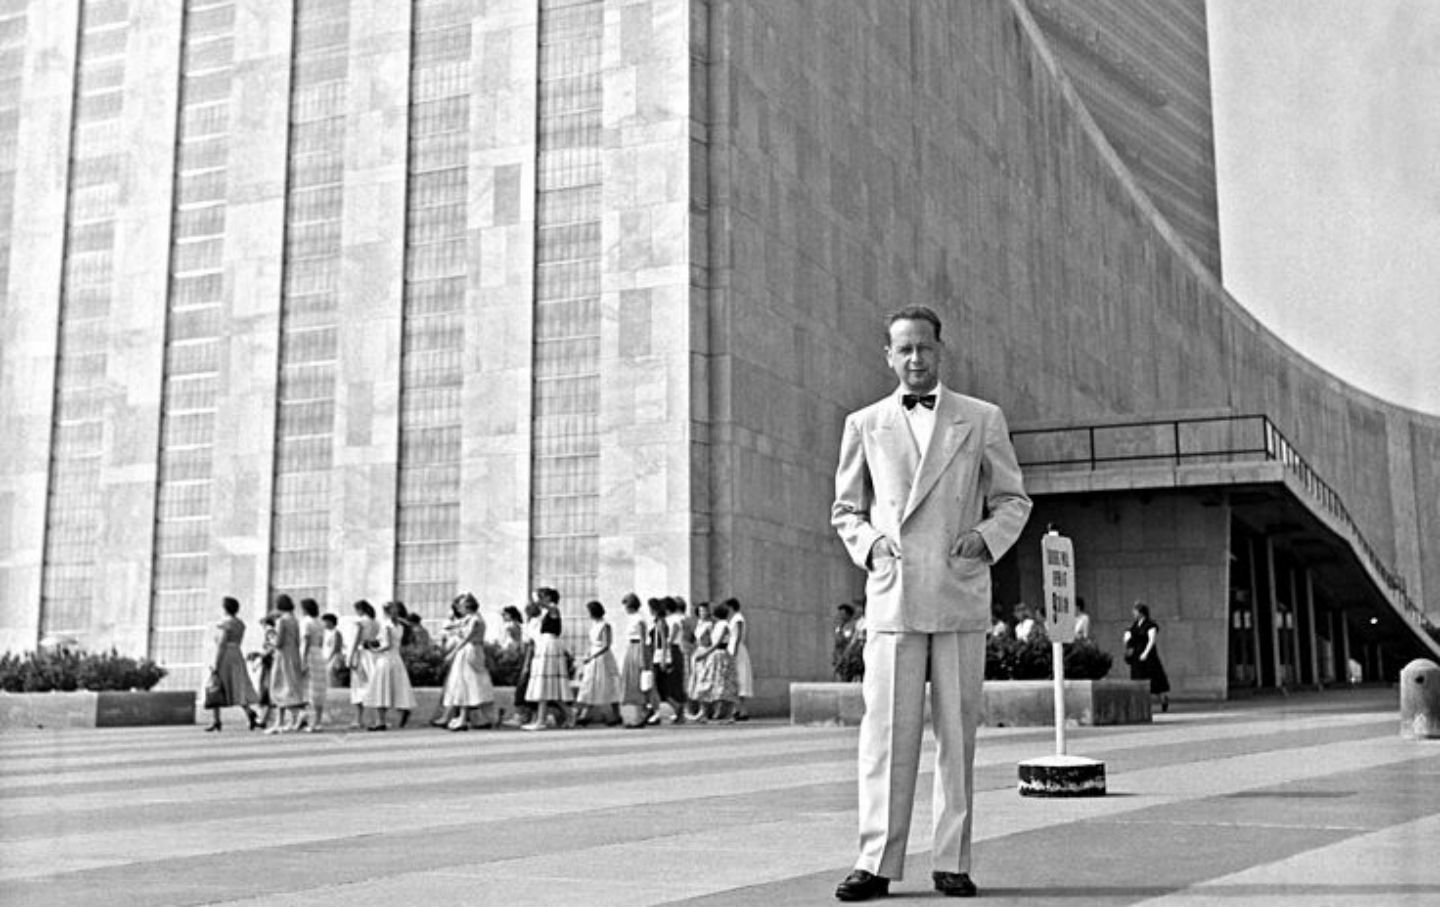 September 18, 1961: UN Secretary General Dag Hammarskjöld Dies in a Plane Crash